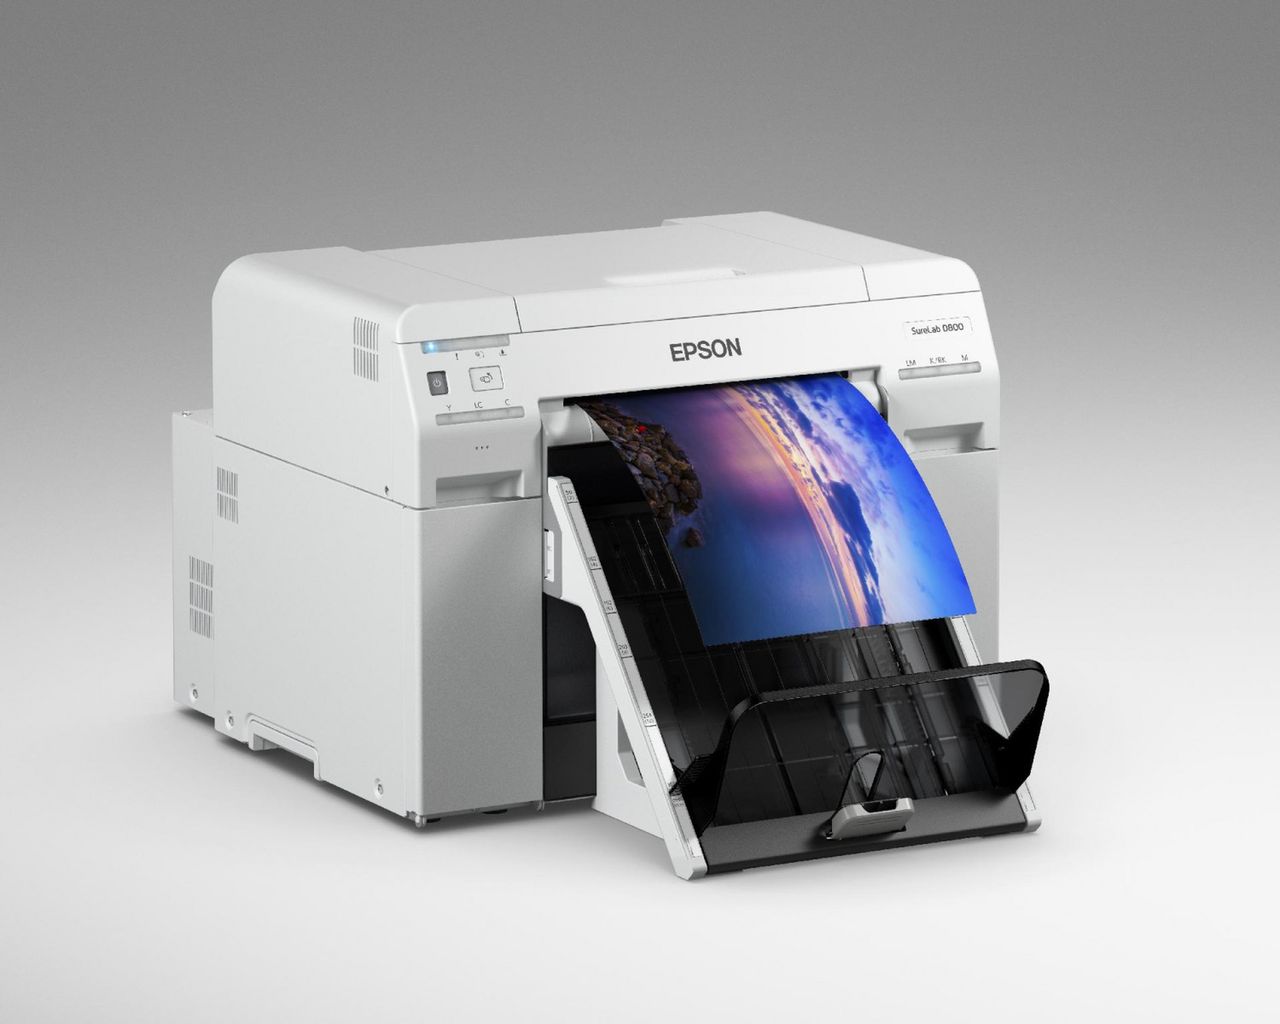 Epson prezentuje nową, kompaktową drukarkę fotograficzną, fot. materiały prasowe.